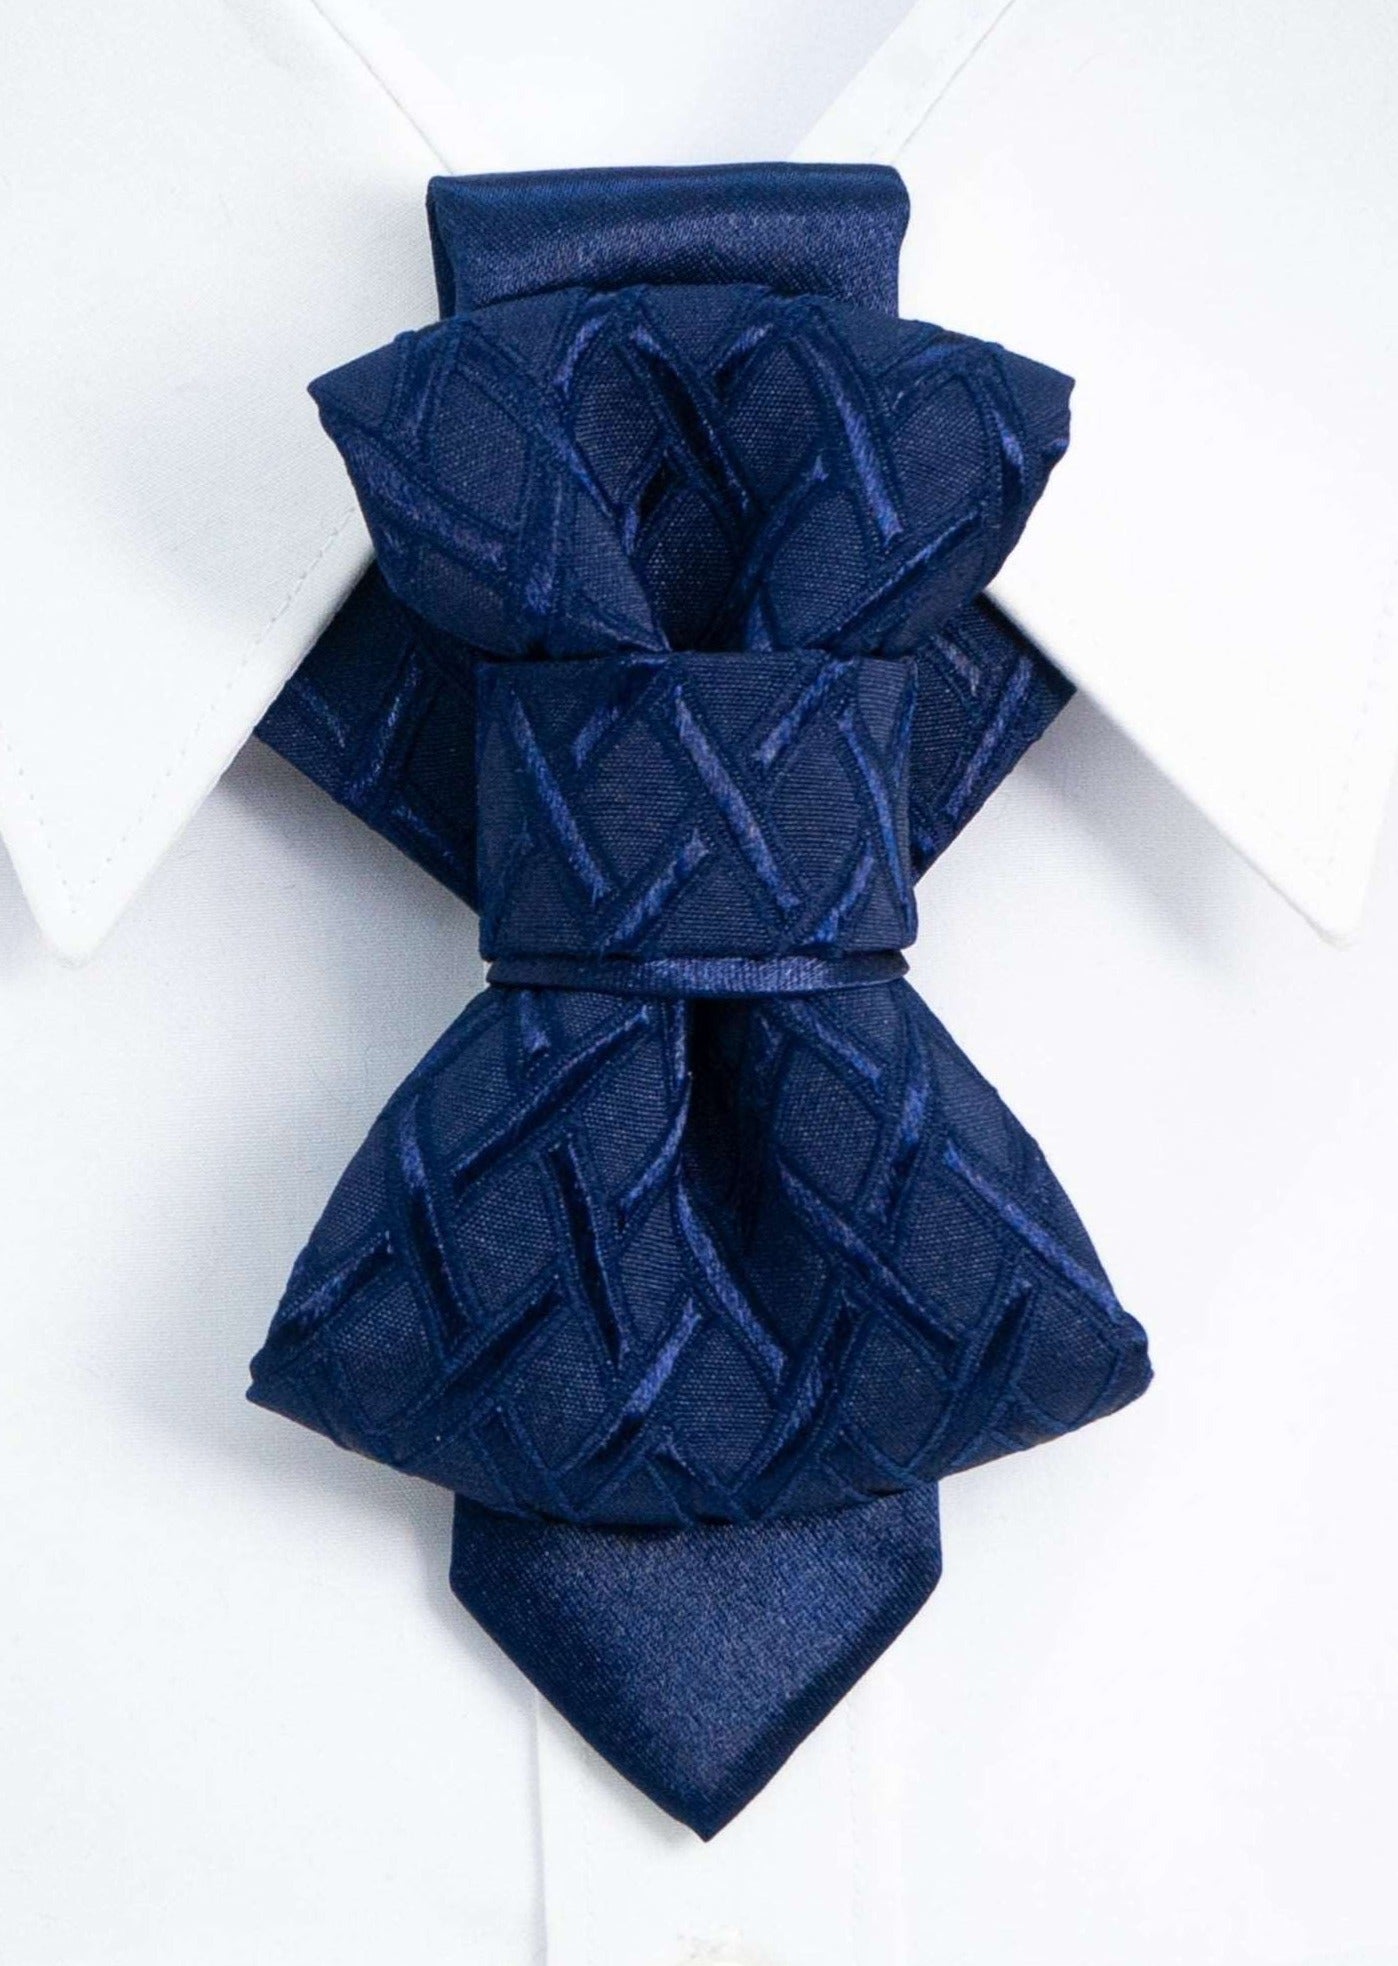 Unique Blue wedding bow tie created by Ruty Design , Vilniaus kaklaraištis, unikali peteliškė